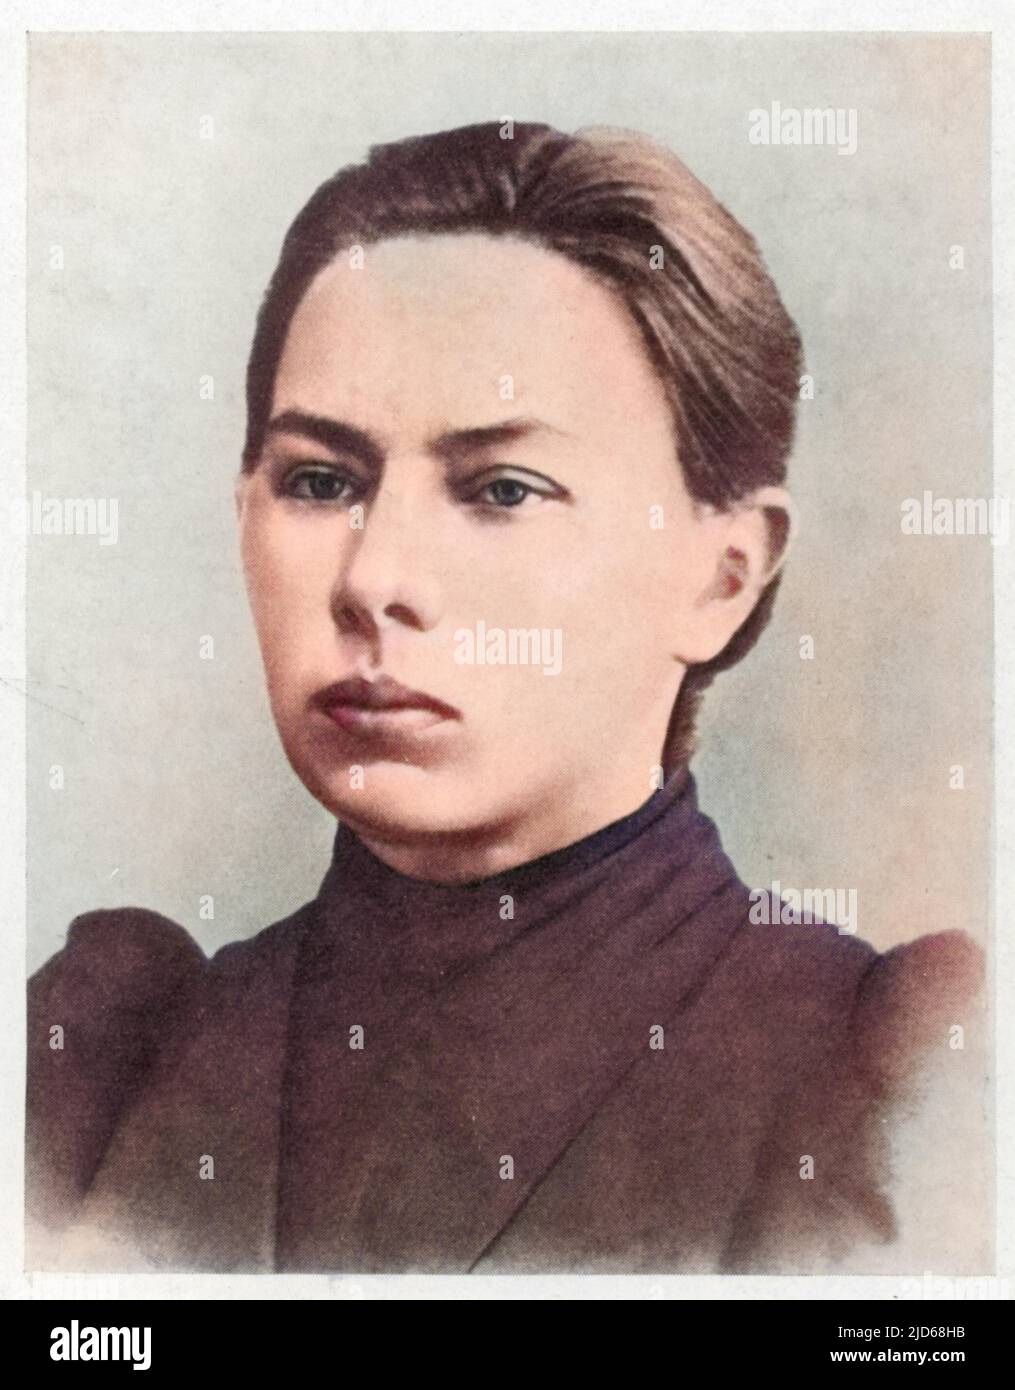 NADESCHDA KONSTANTINOWNA KRUPSKAJA russischer Revolutionär - heiratete Lenin in 1898. Kolorierte Version von : 10118855 Datum: 1869 - 1939 Stockfoto